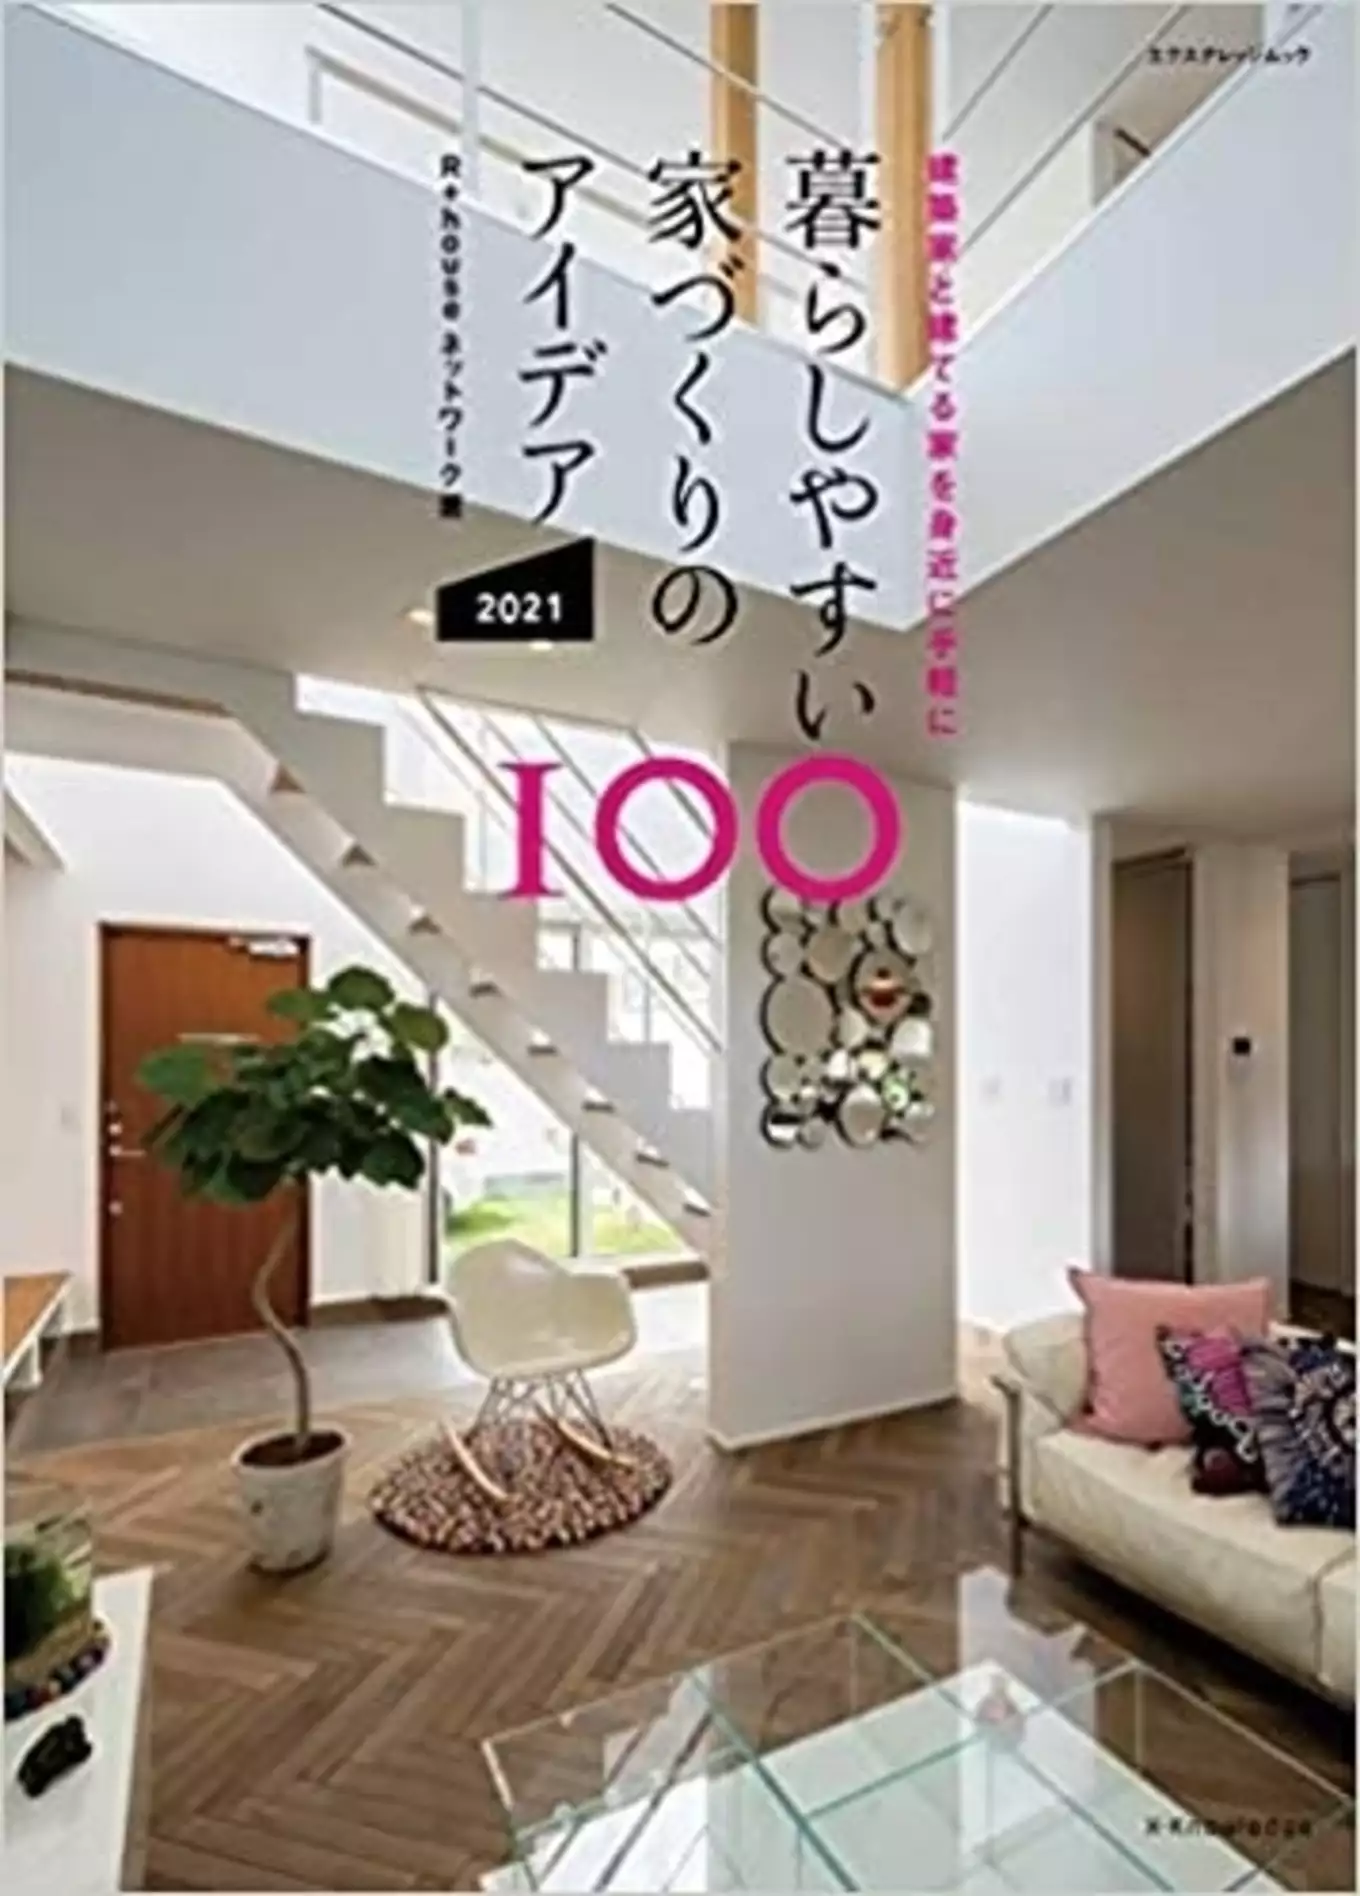 「暮らしやすい家づくりのアイデア100」表紙